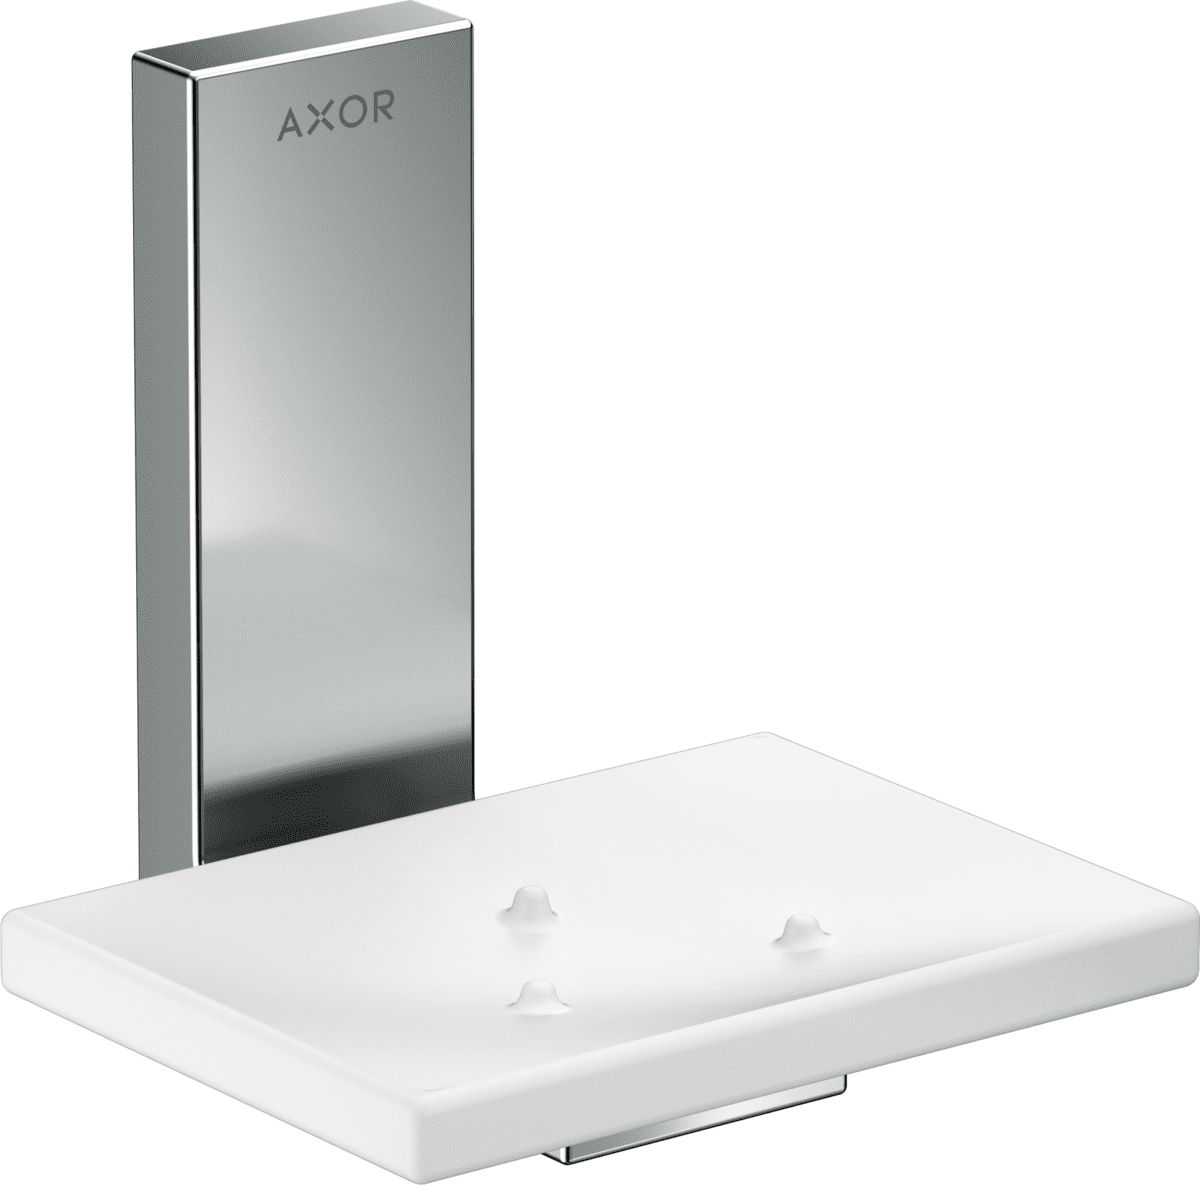 εικόνα του HANSGROHE AXOR Universal Rectangular Soap dish #42605000 - Chrome